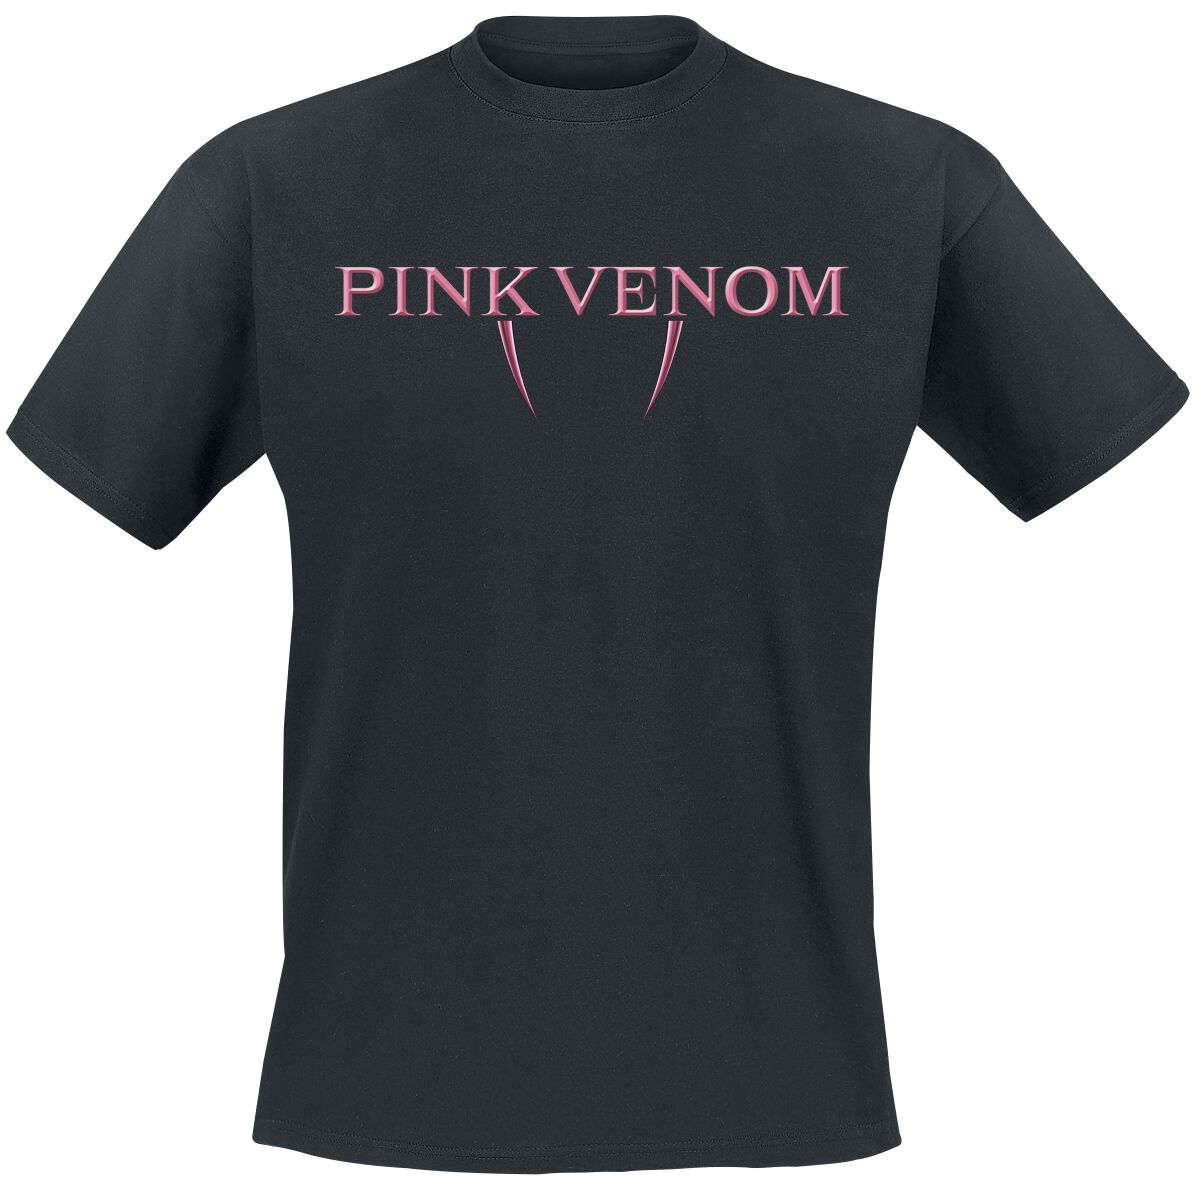 Blackpink T-Shirt - Pink Venom Fangs - M bis XL - für Männer - Größe M - schwarz  - Lizenziertes Merchandise!